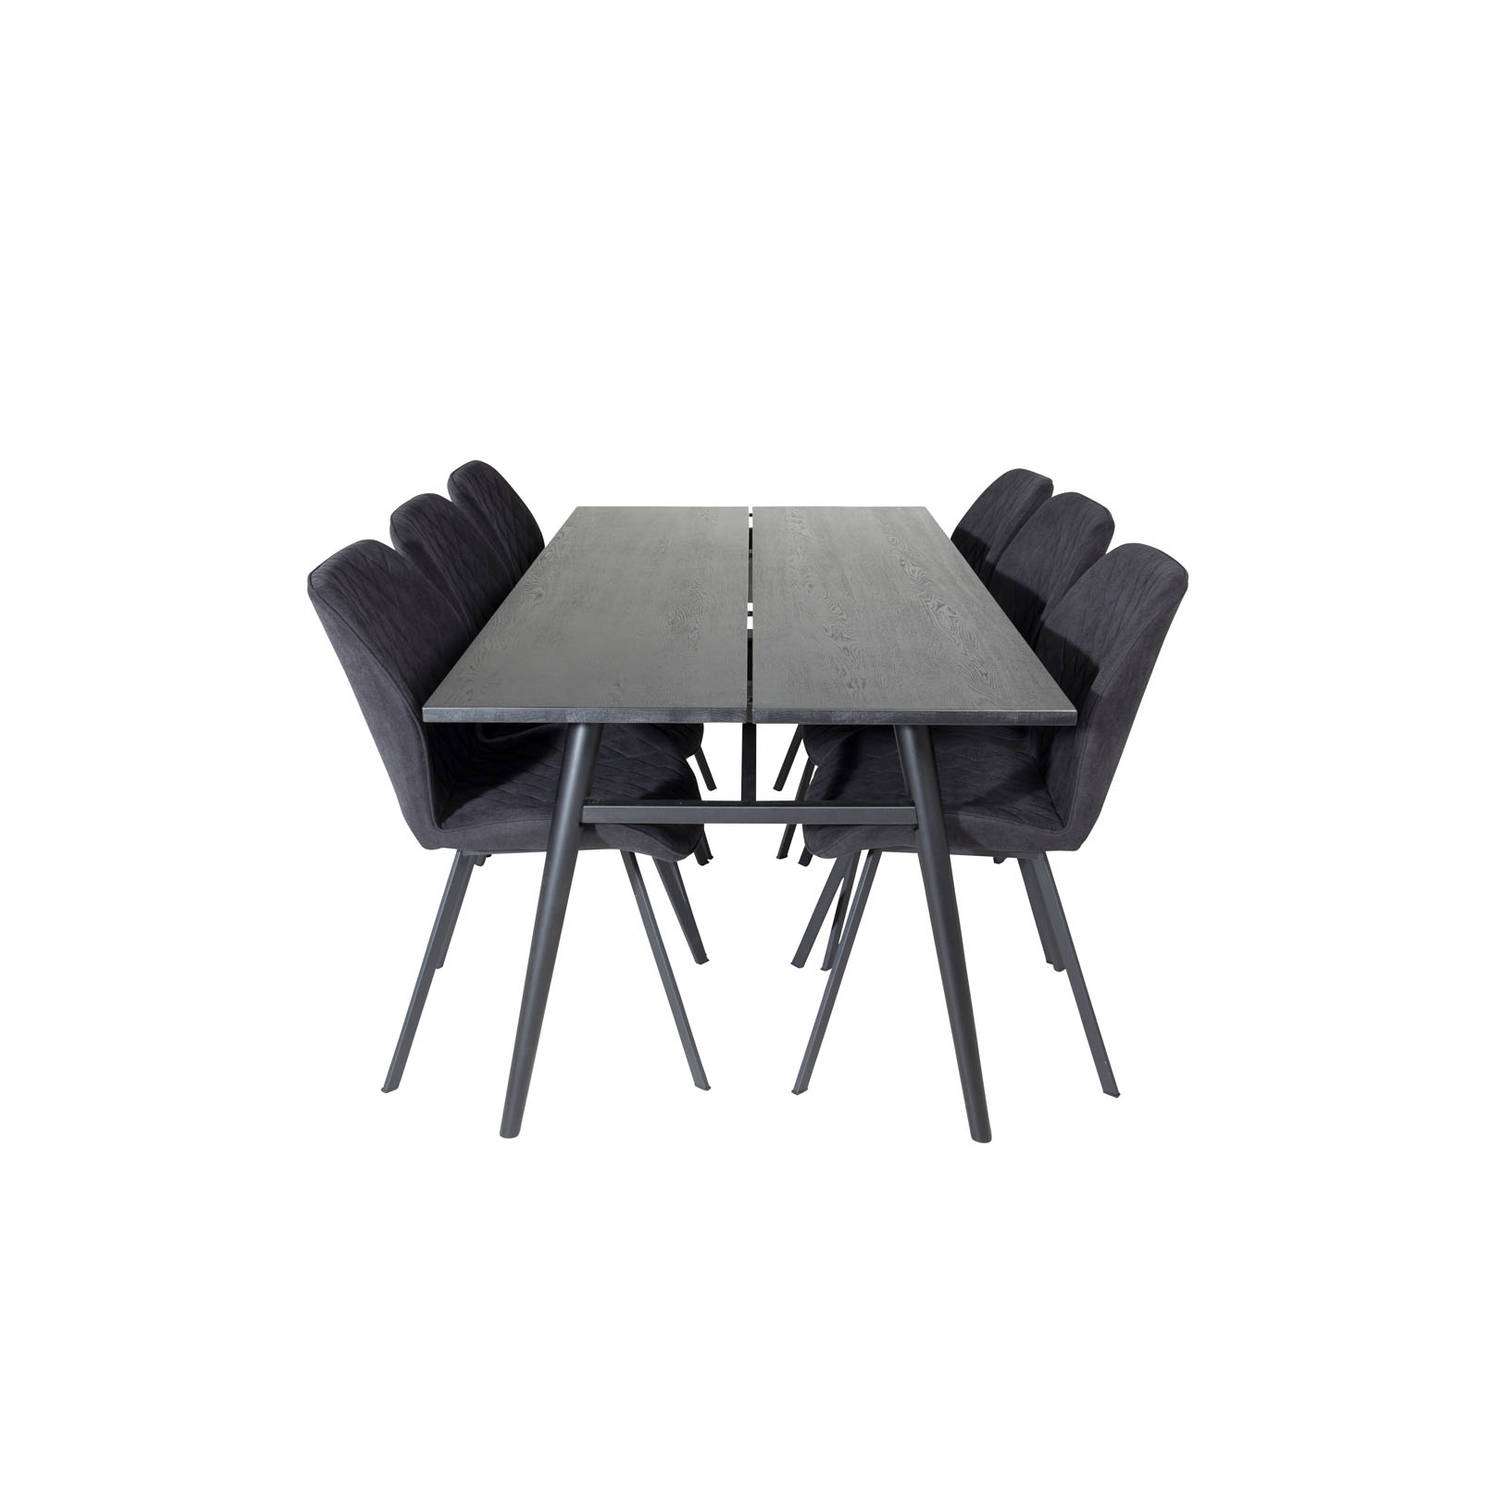 Sleek eethoek eetkamertafel uitschuifbare tafel lengte cm 195 / 280 zwart en 6 Gemma eetkamerstal zwart.